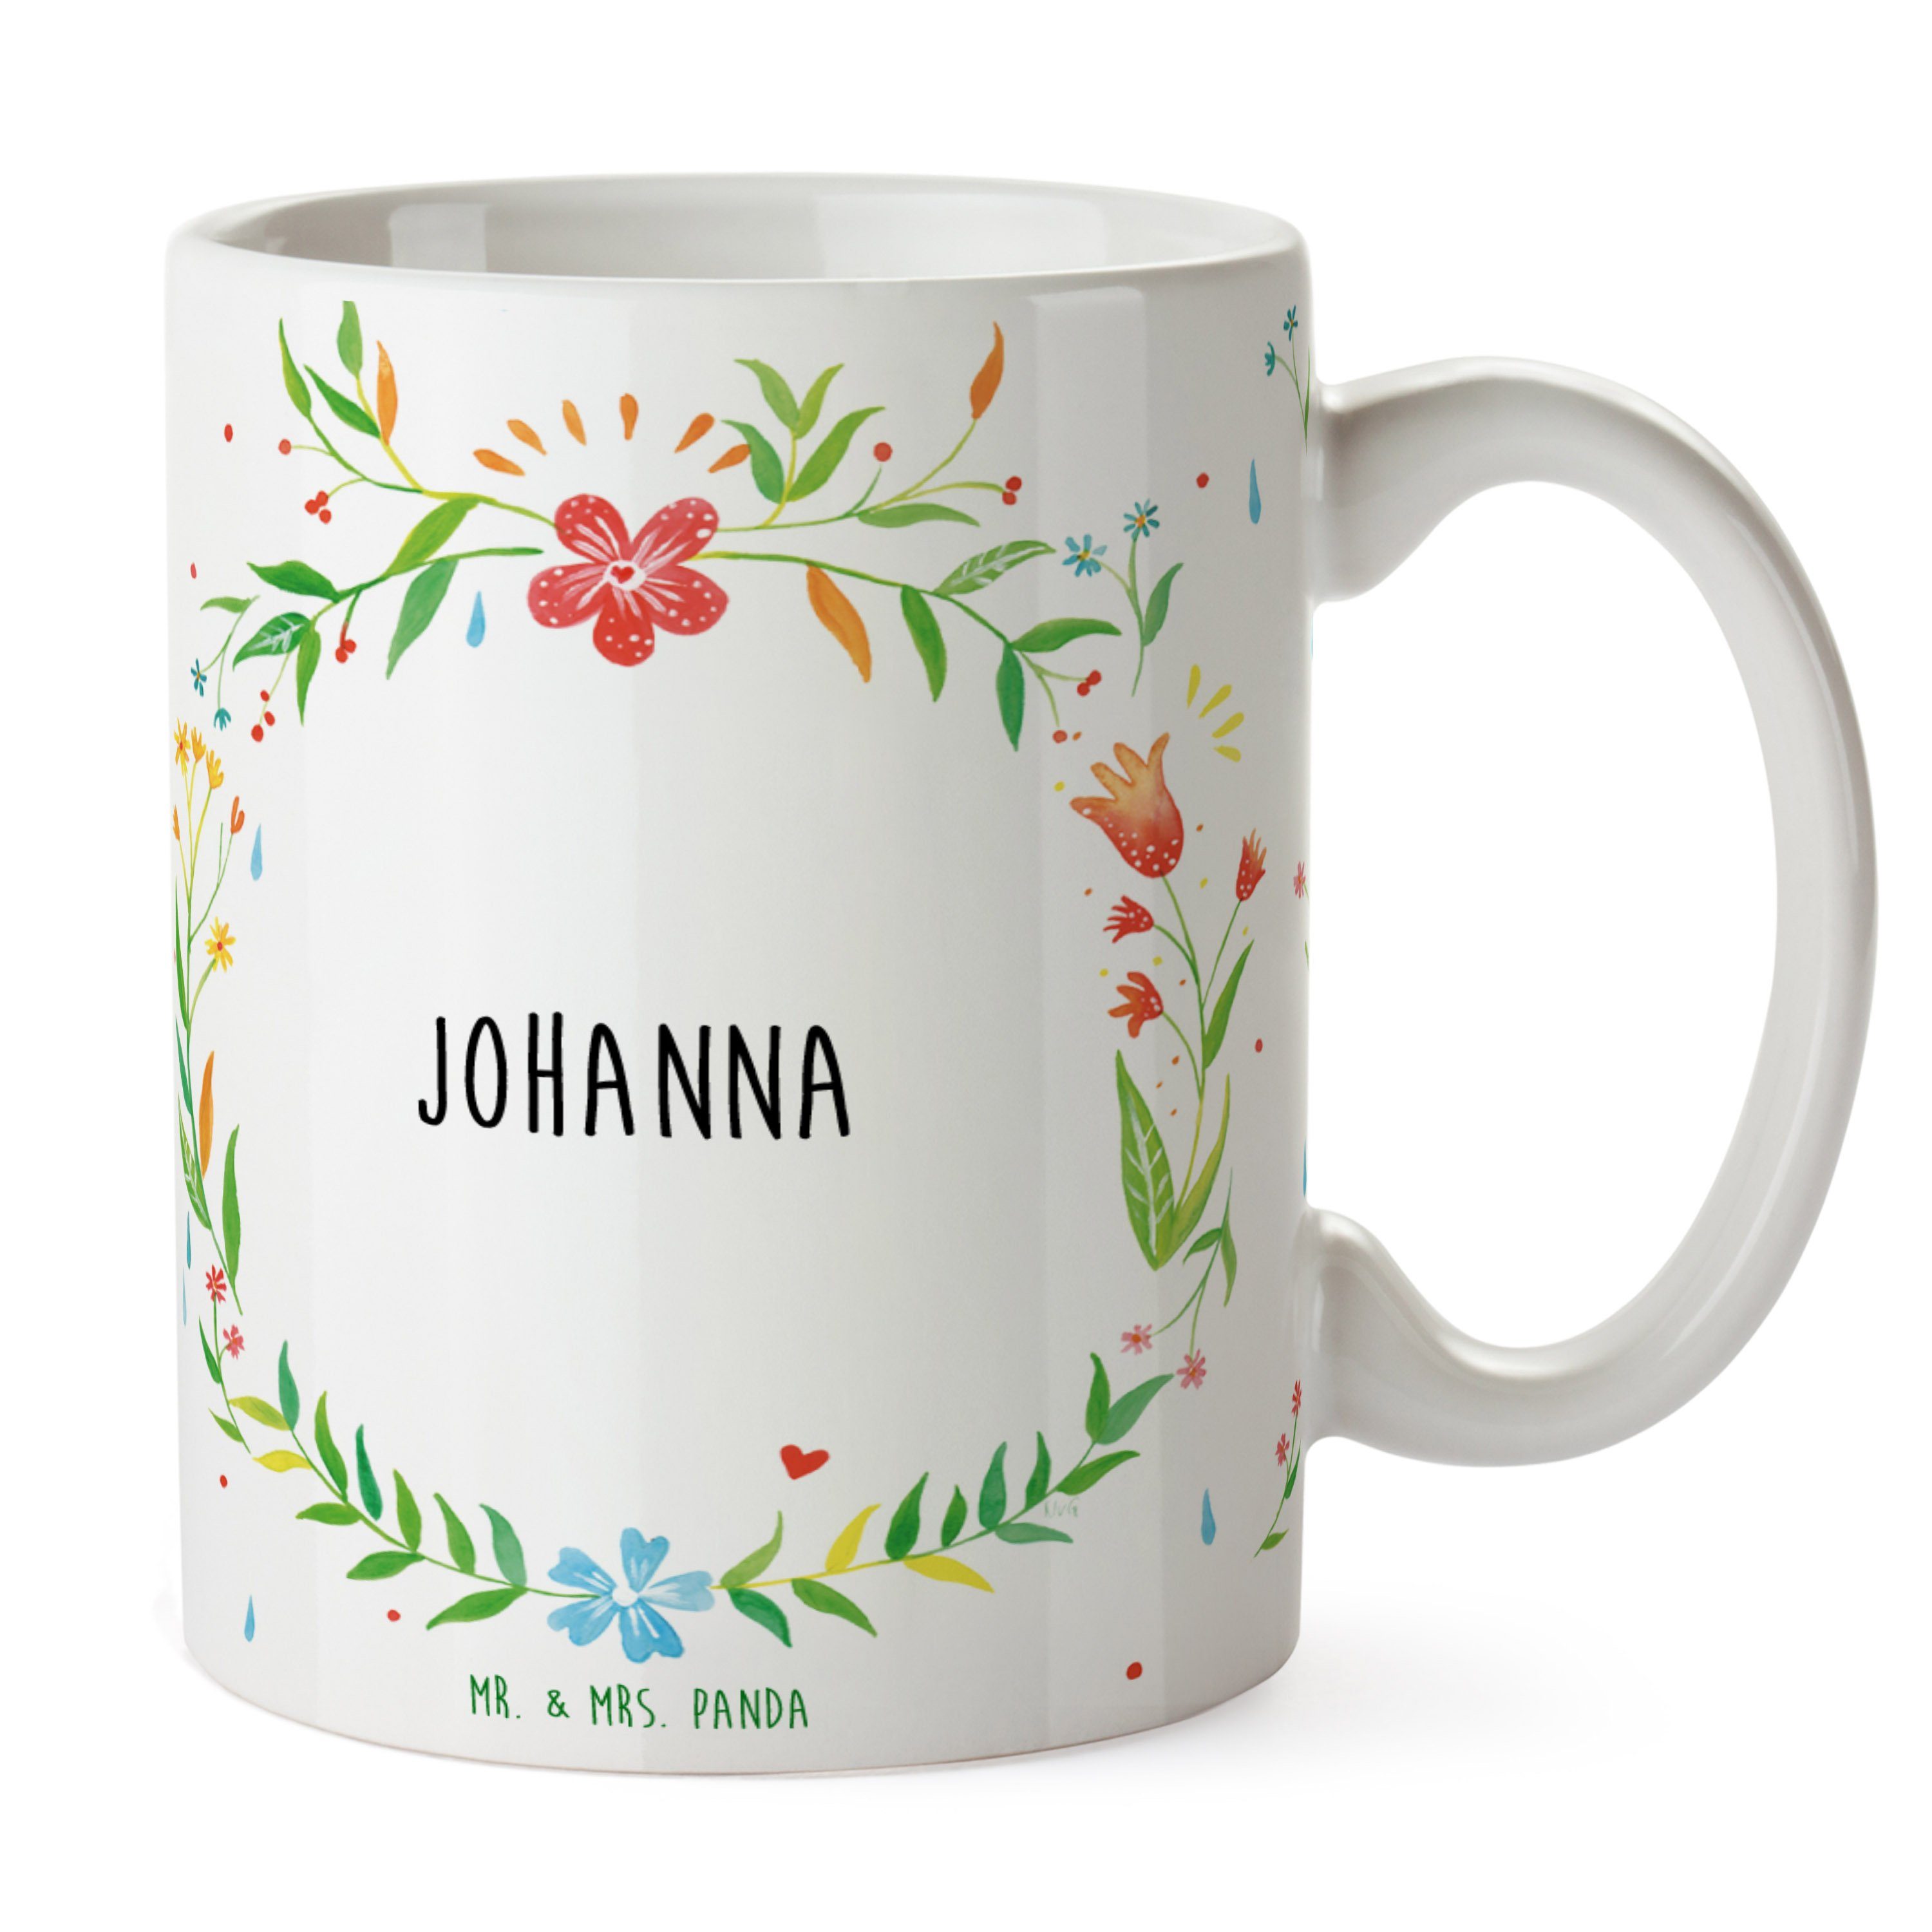 Johanna Keramik - Kaffeeb, Mr. & Becher, Panda Kaffeetasse, Tasse Geschenk, Teebecher, Teetasse, Mrs.